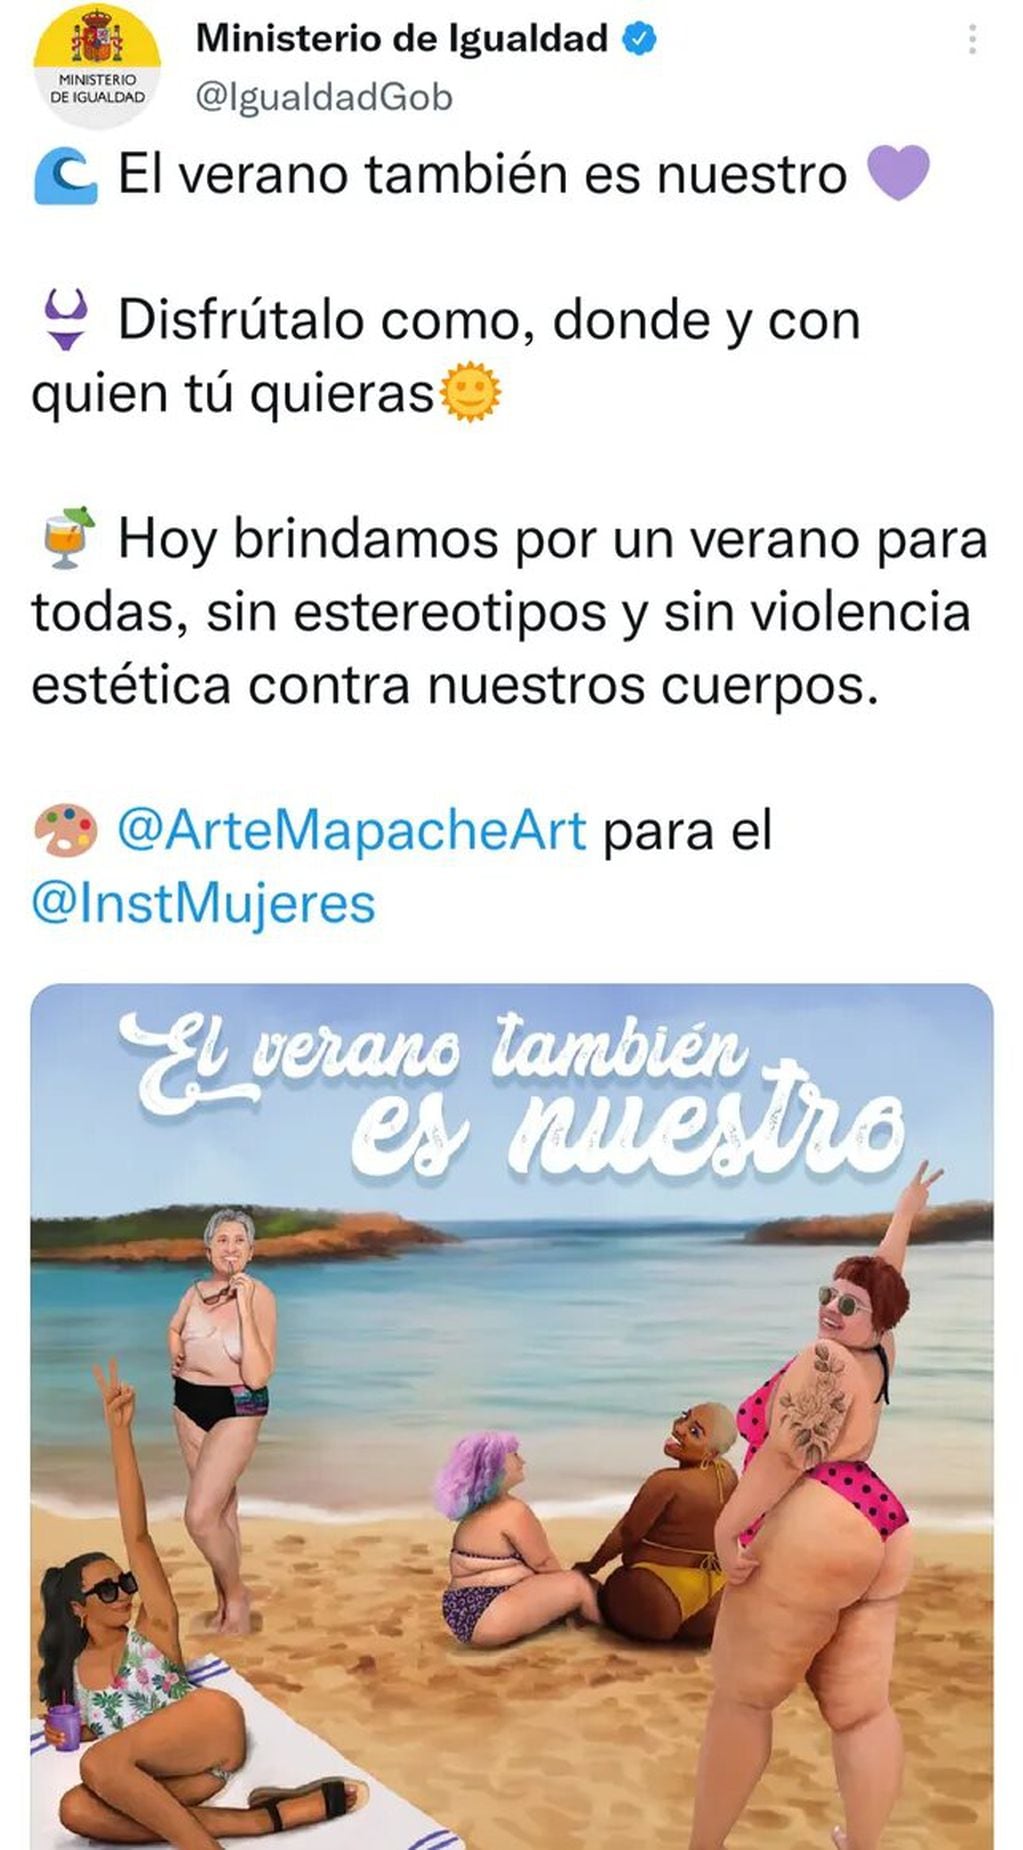 Insólita campaña inclusiva en España.